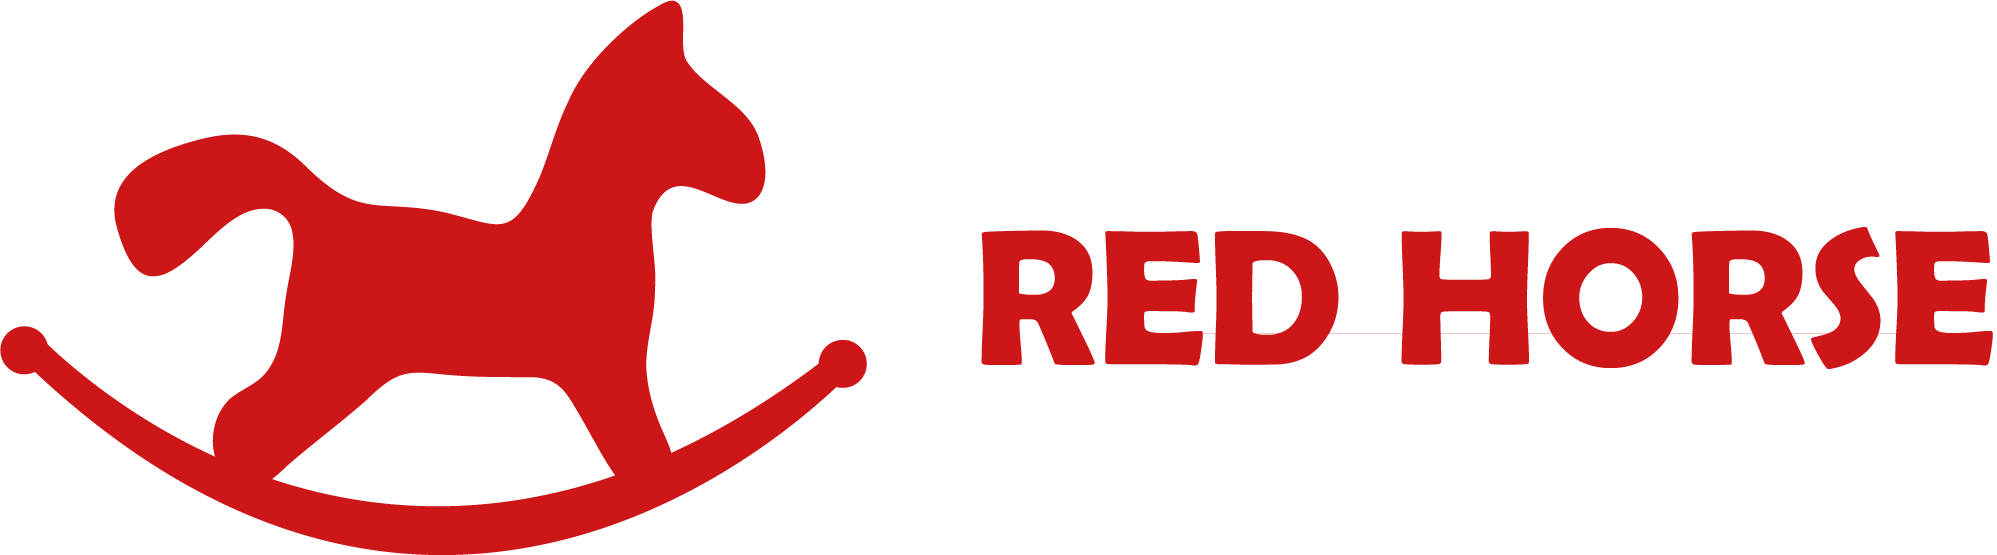 redhorse logo